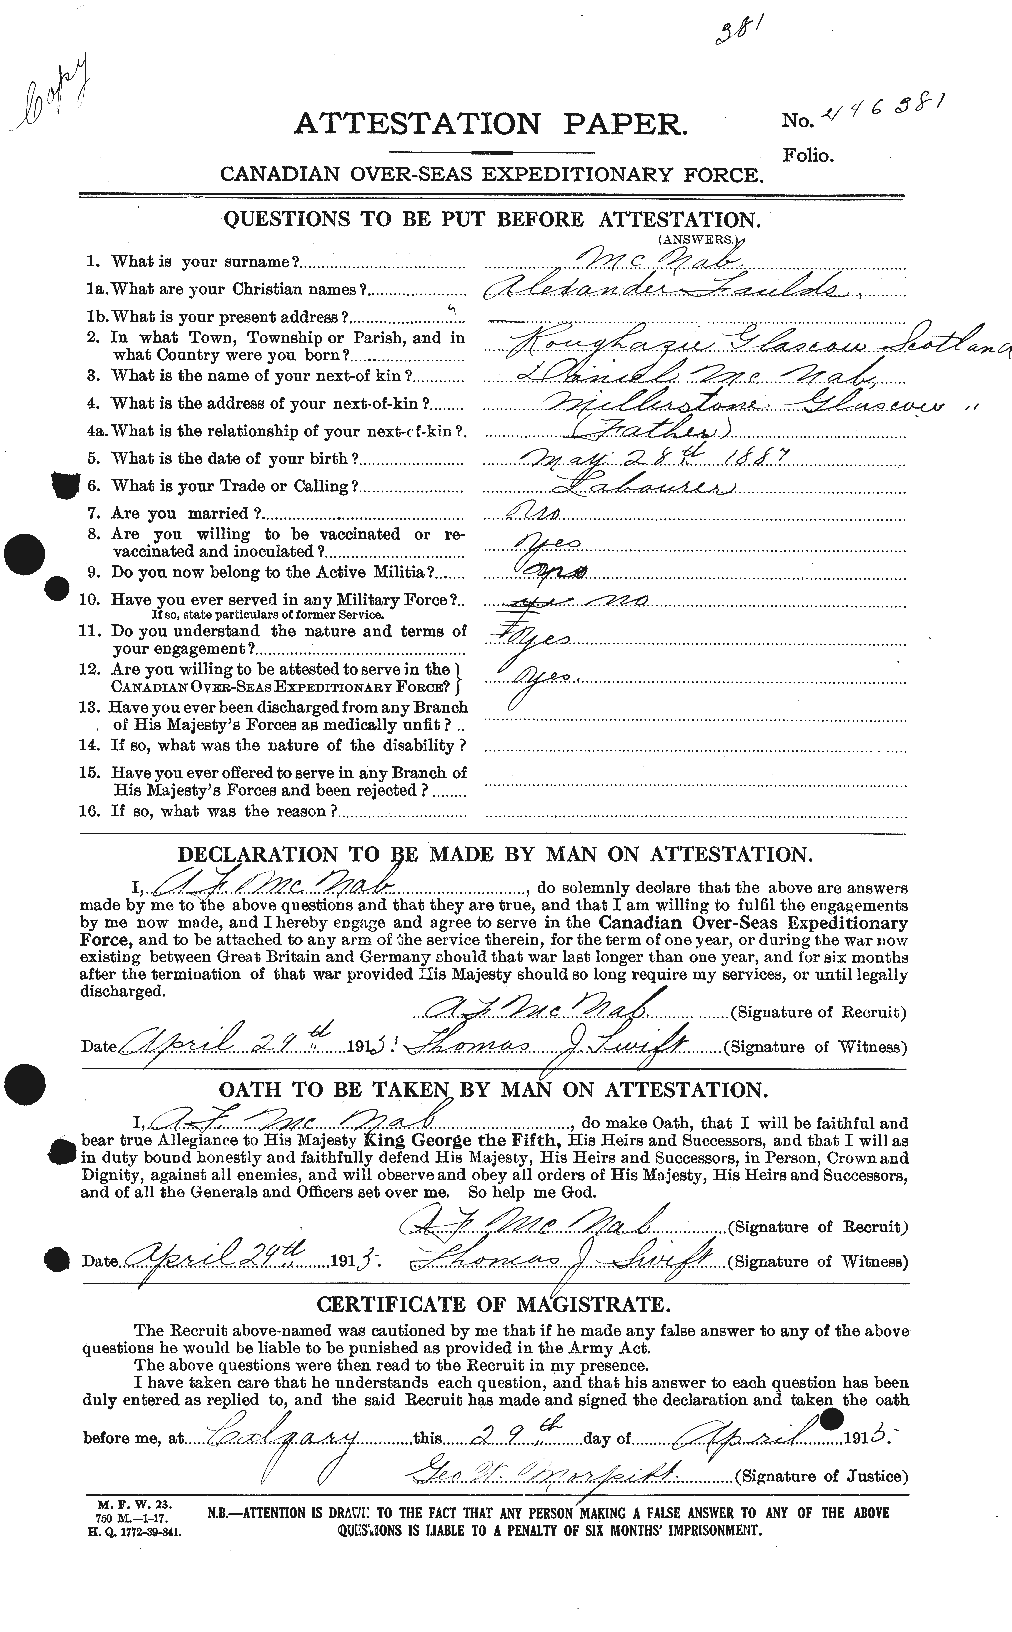 Dossiers du Personnel de la Première Guerre mondiale - CEC 539514a